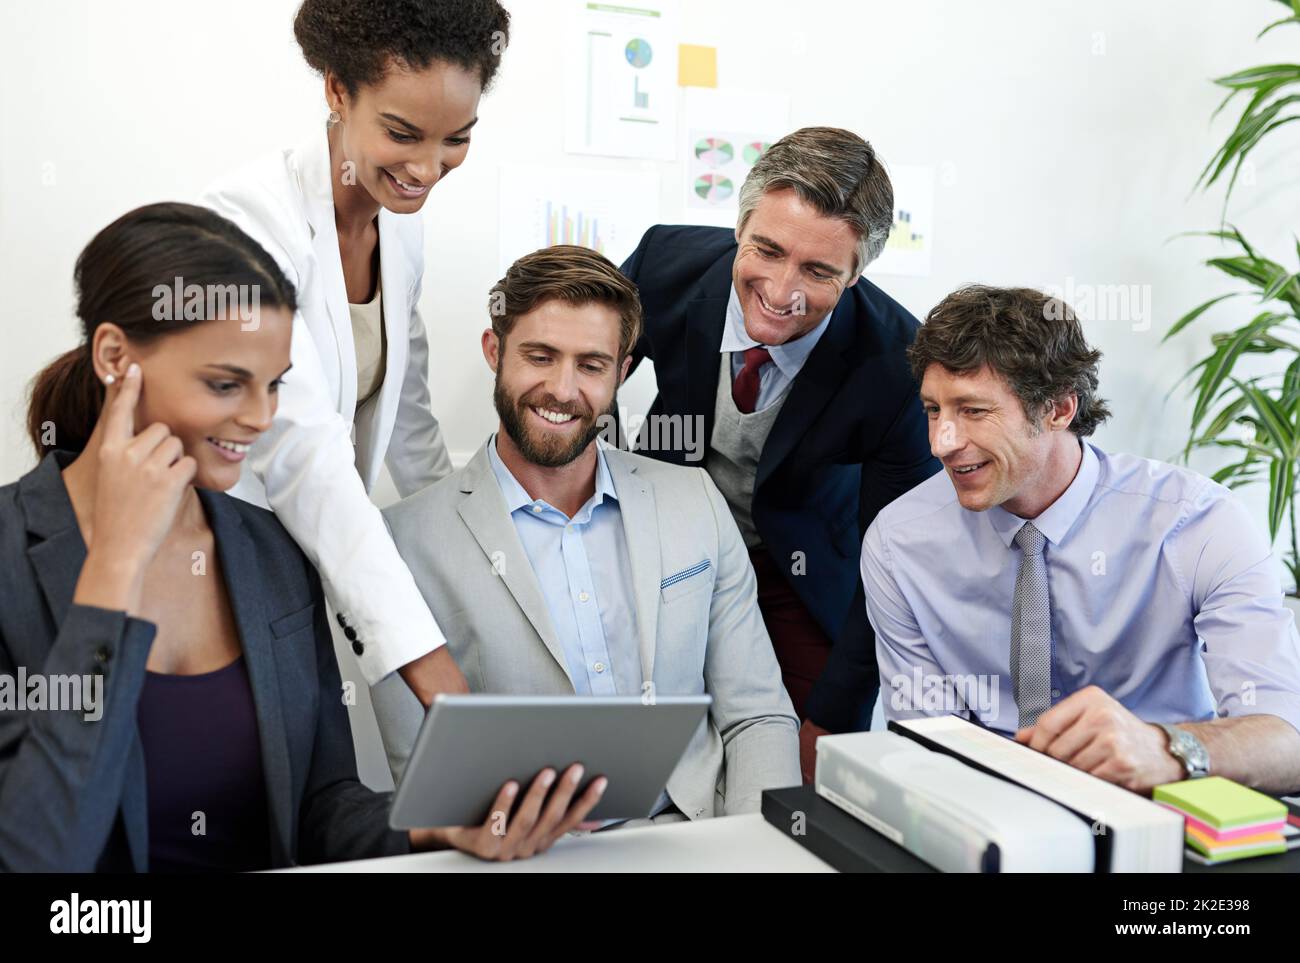 Prendere decisioni strategiche come team. Shot di un gruppo di uomini d'affari che lavorano insieme utilizzando un tablet digitale. Foto Stock